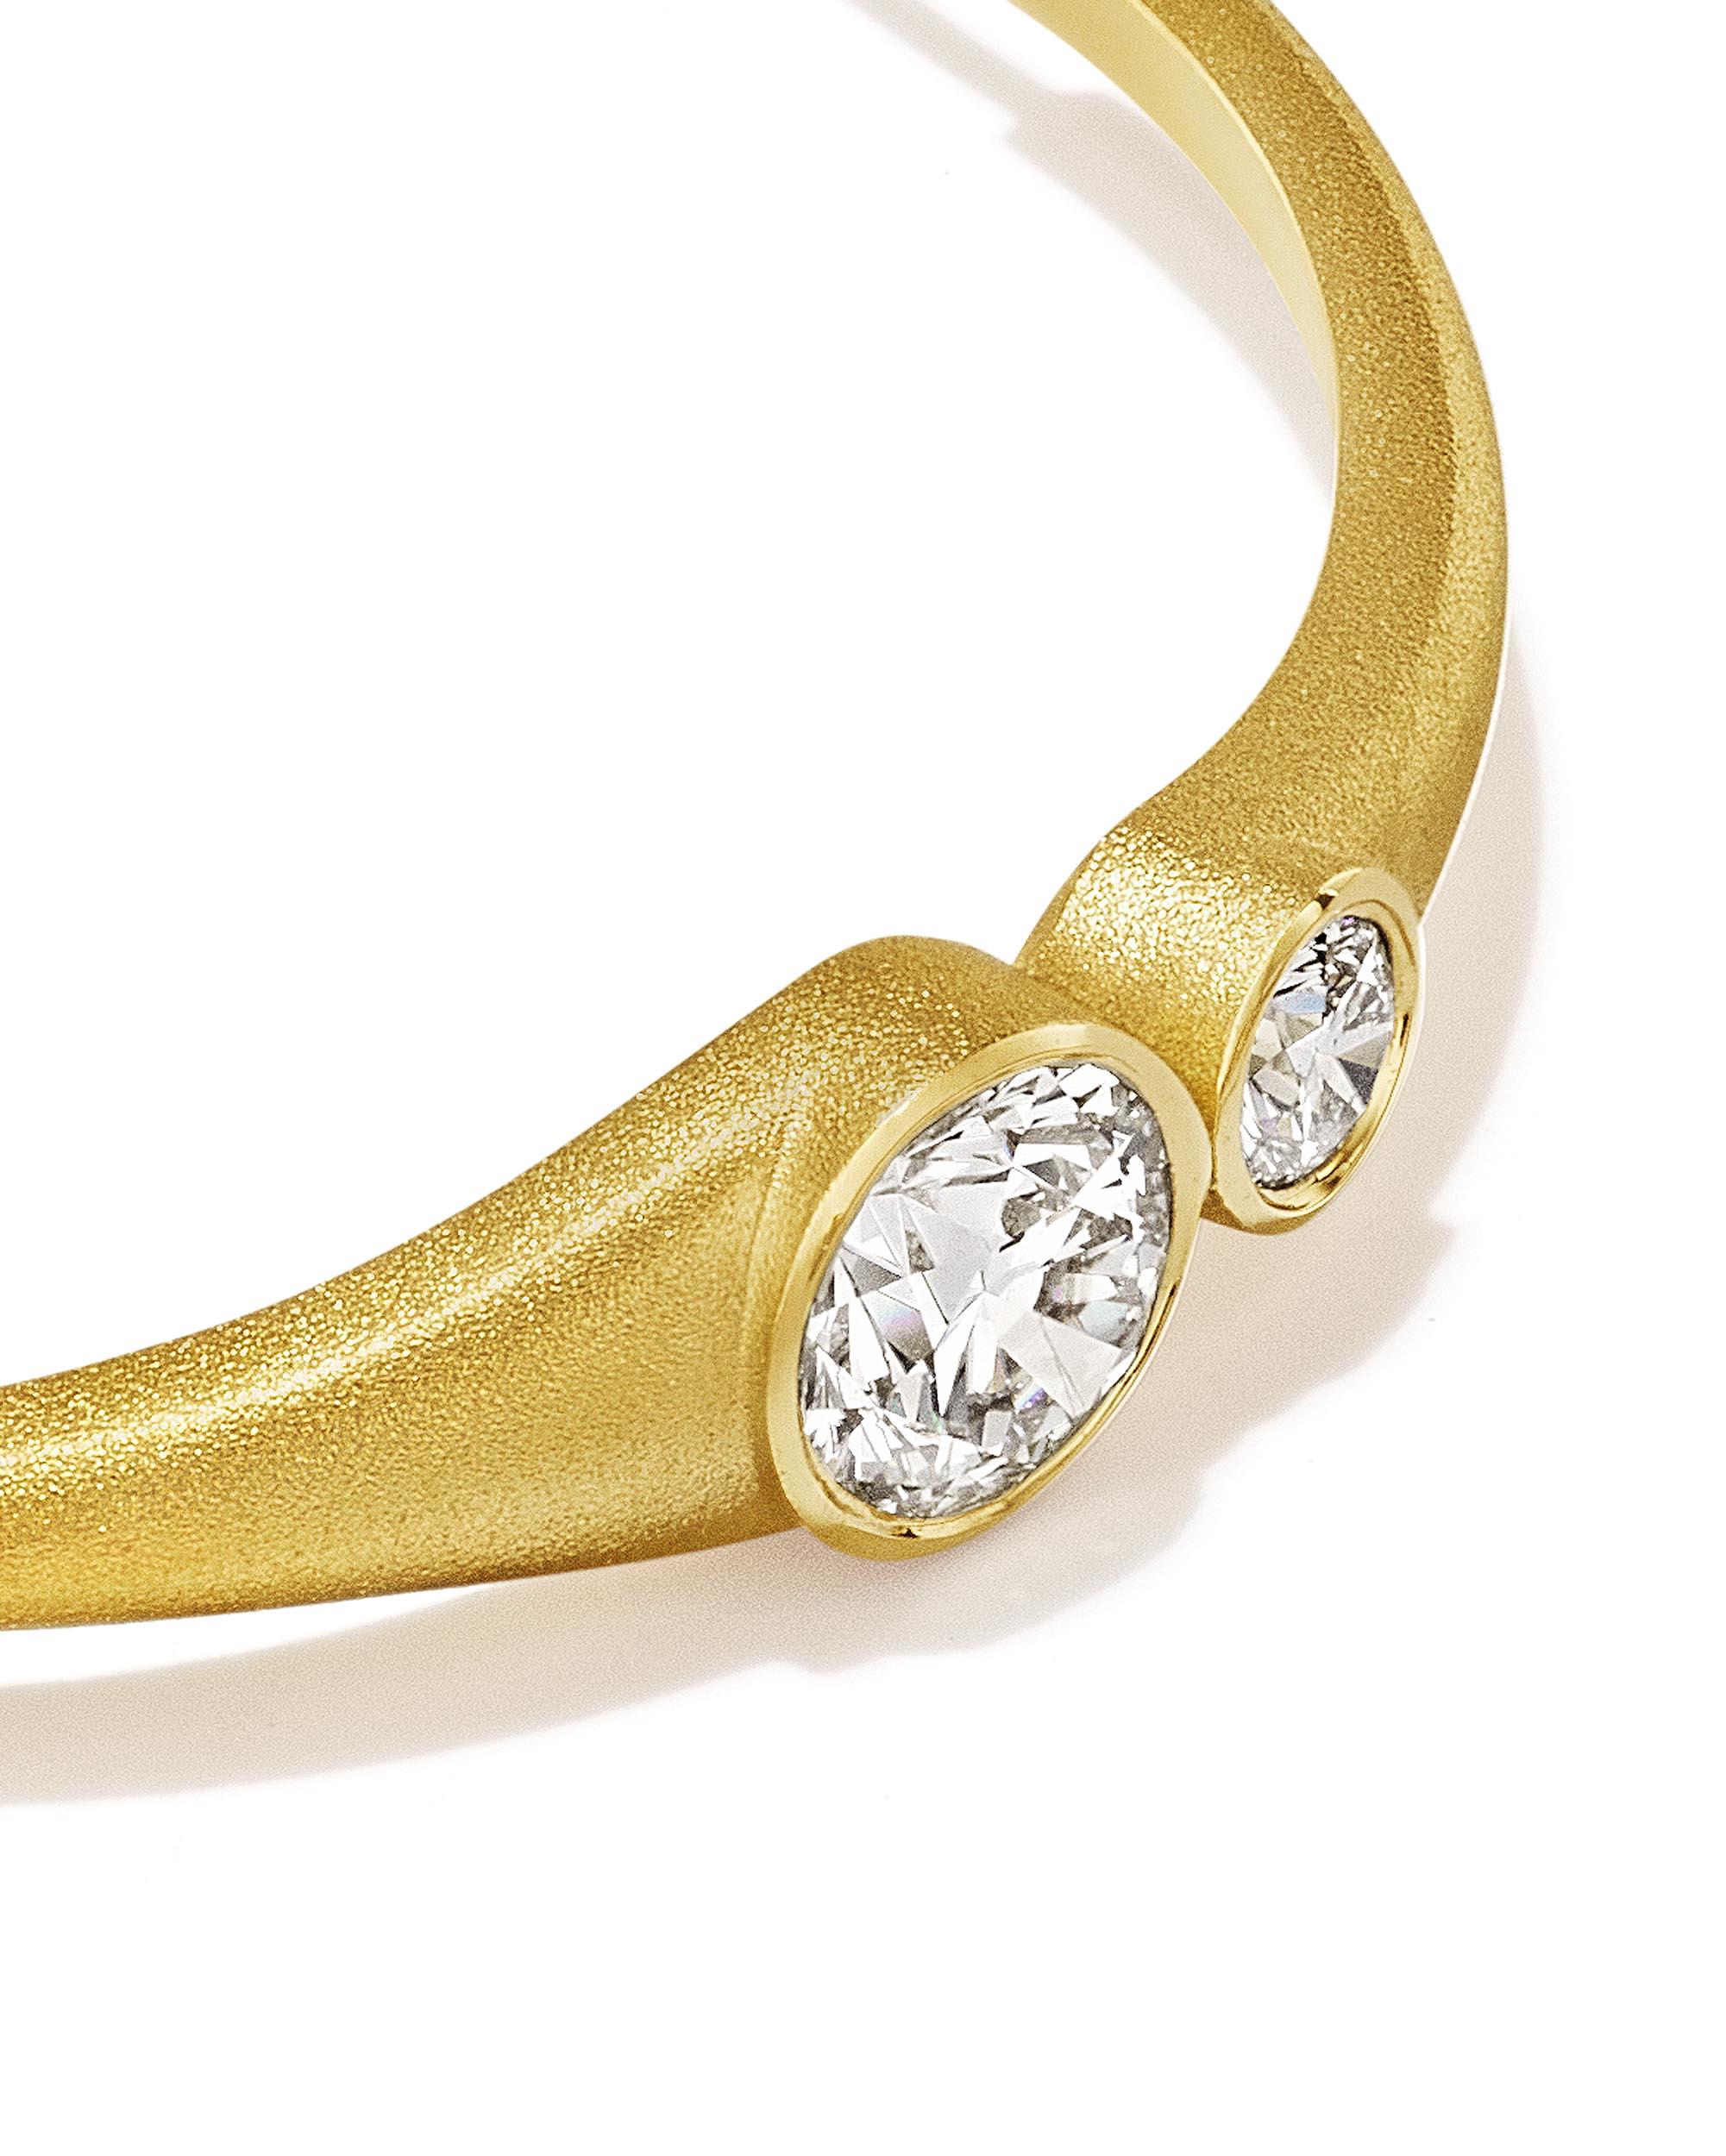 Brilliant Cut Geoffrey Good Galaxy Hoop Earrings in 18k Yellow Gold For Sale